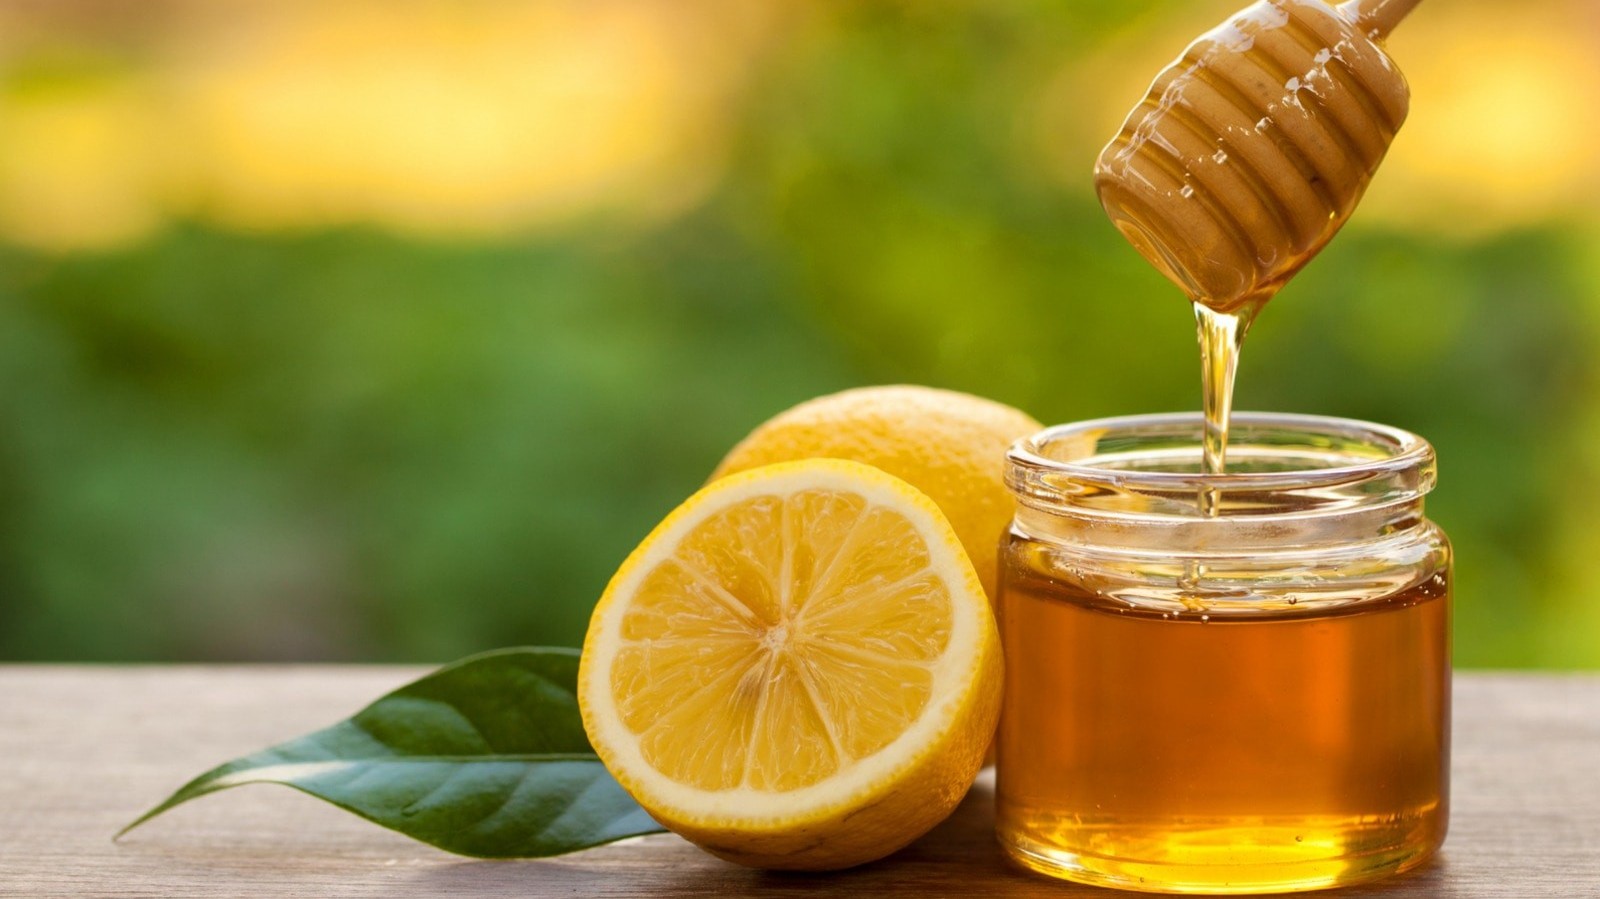 Vì sao nên uống mật ong mỗi ngày?